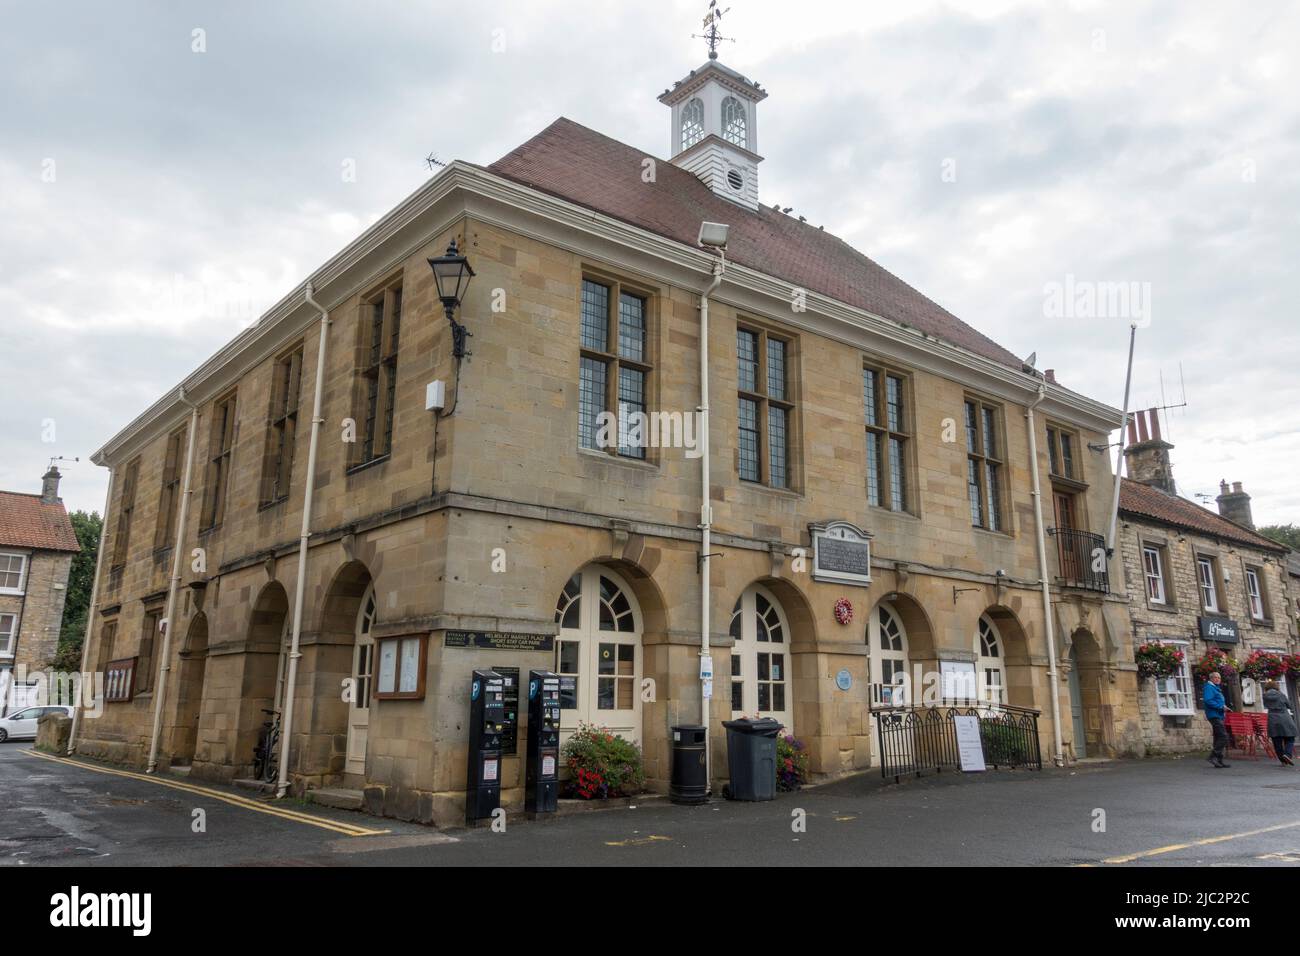 La biblioteca Helmsley en la ciudad se encuentra en Market Place en Helmsley, una ciudad comercial en Ryedale, North Yorkshire, Inglaterra. Foto de stock